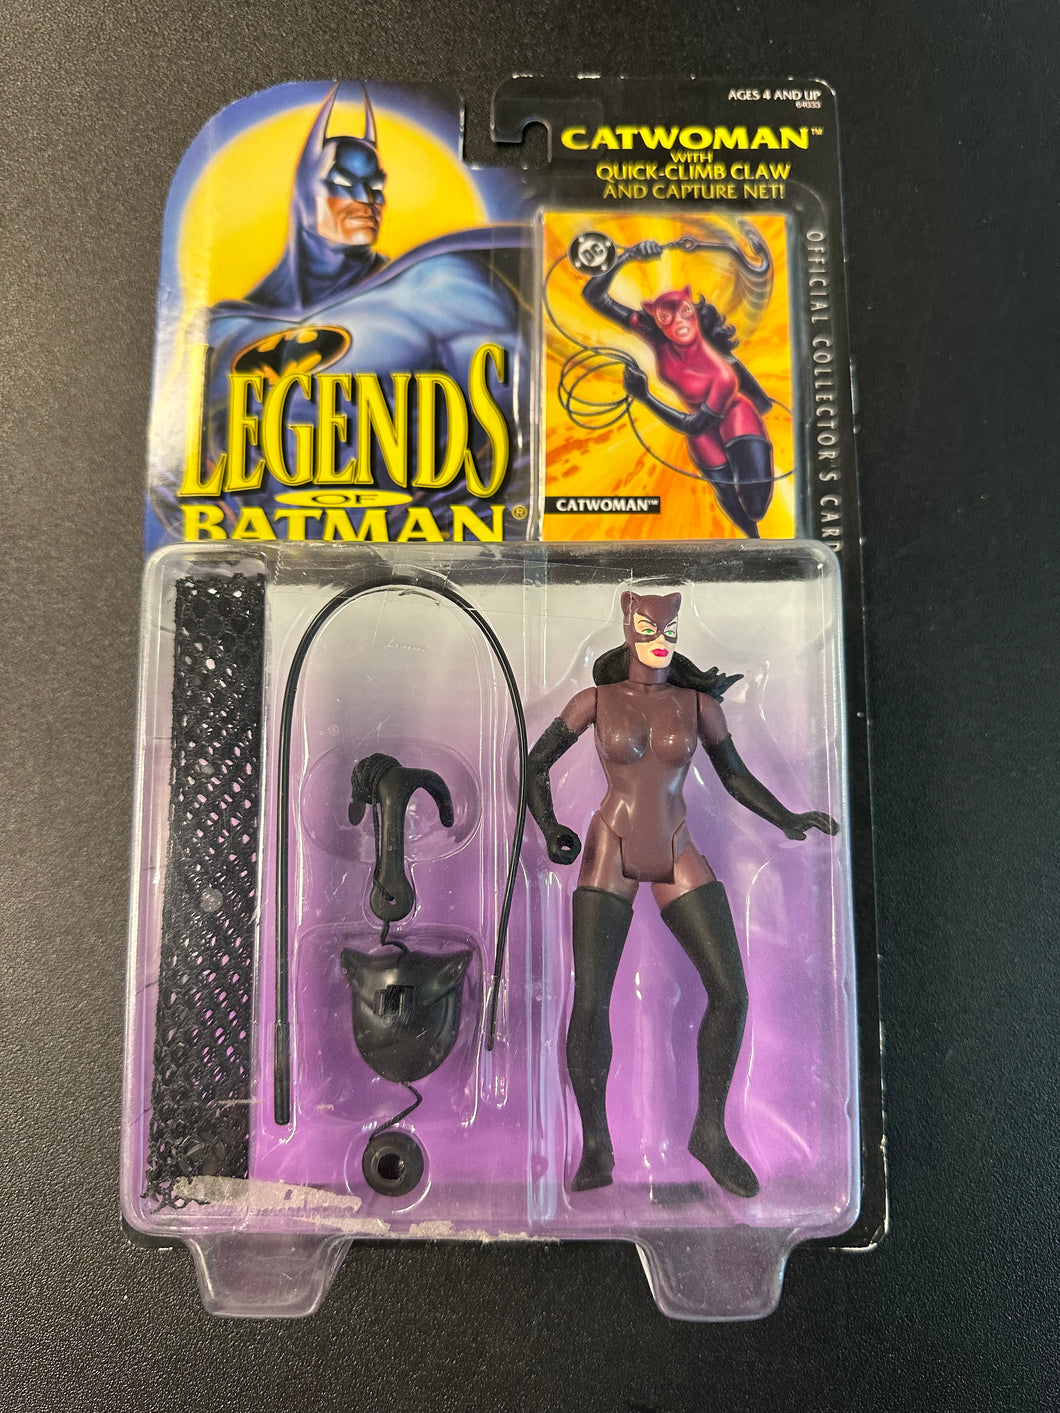 Kenner Legends of Batman Catwoman